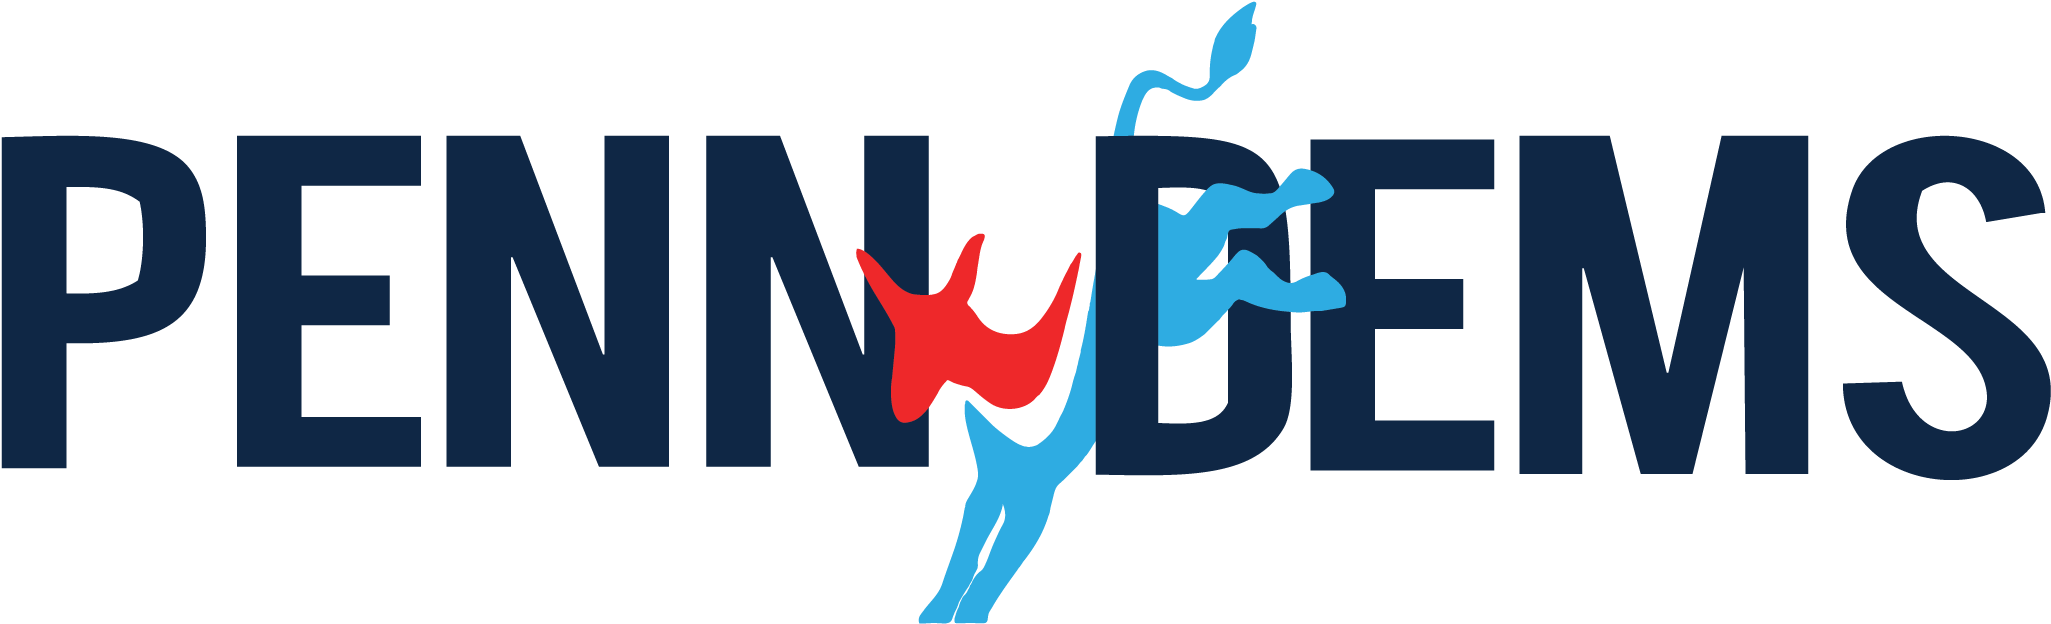 Pennsylvania Democrats Logo